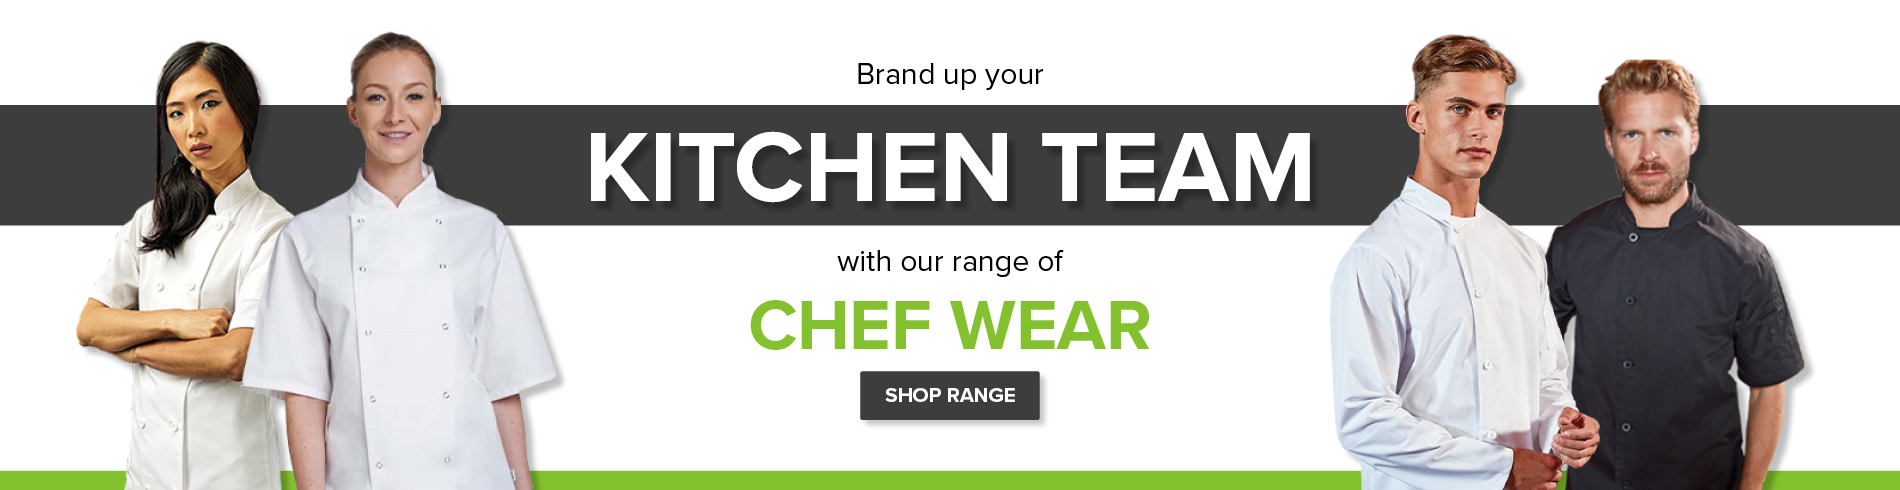 Chefswear and Kitchenwear Staff Uniforms 